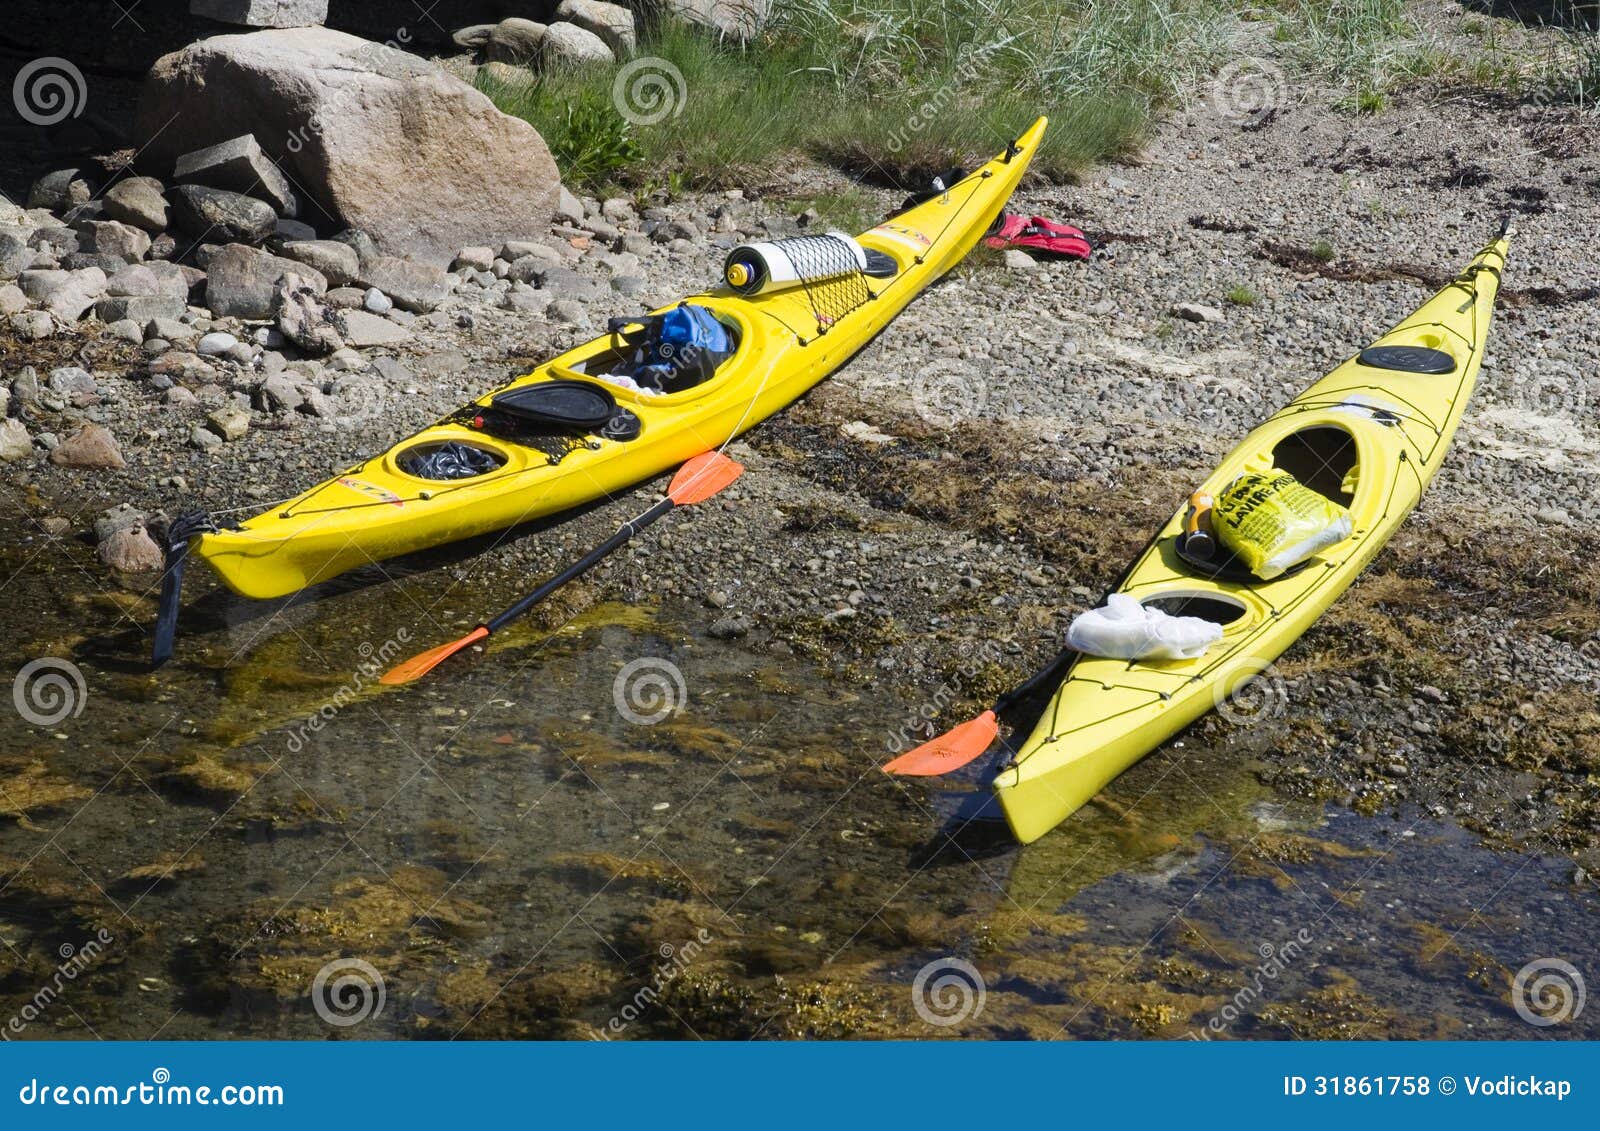 sea kayaking clipart - photo #14